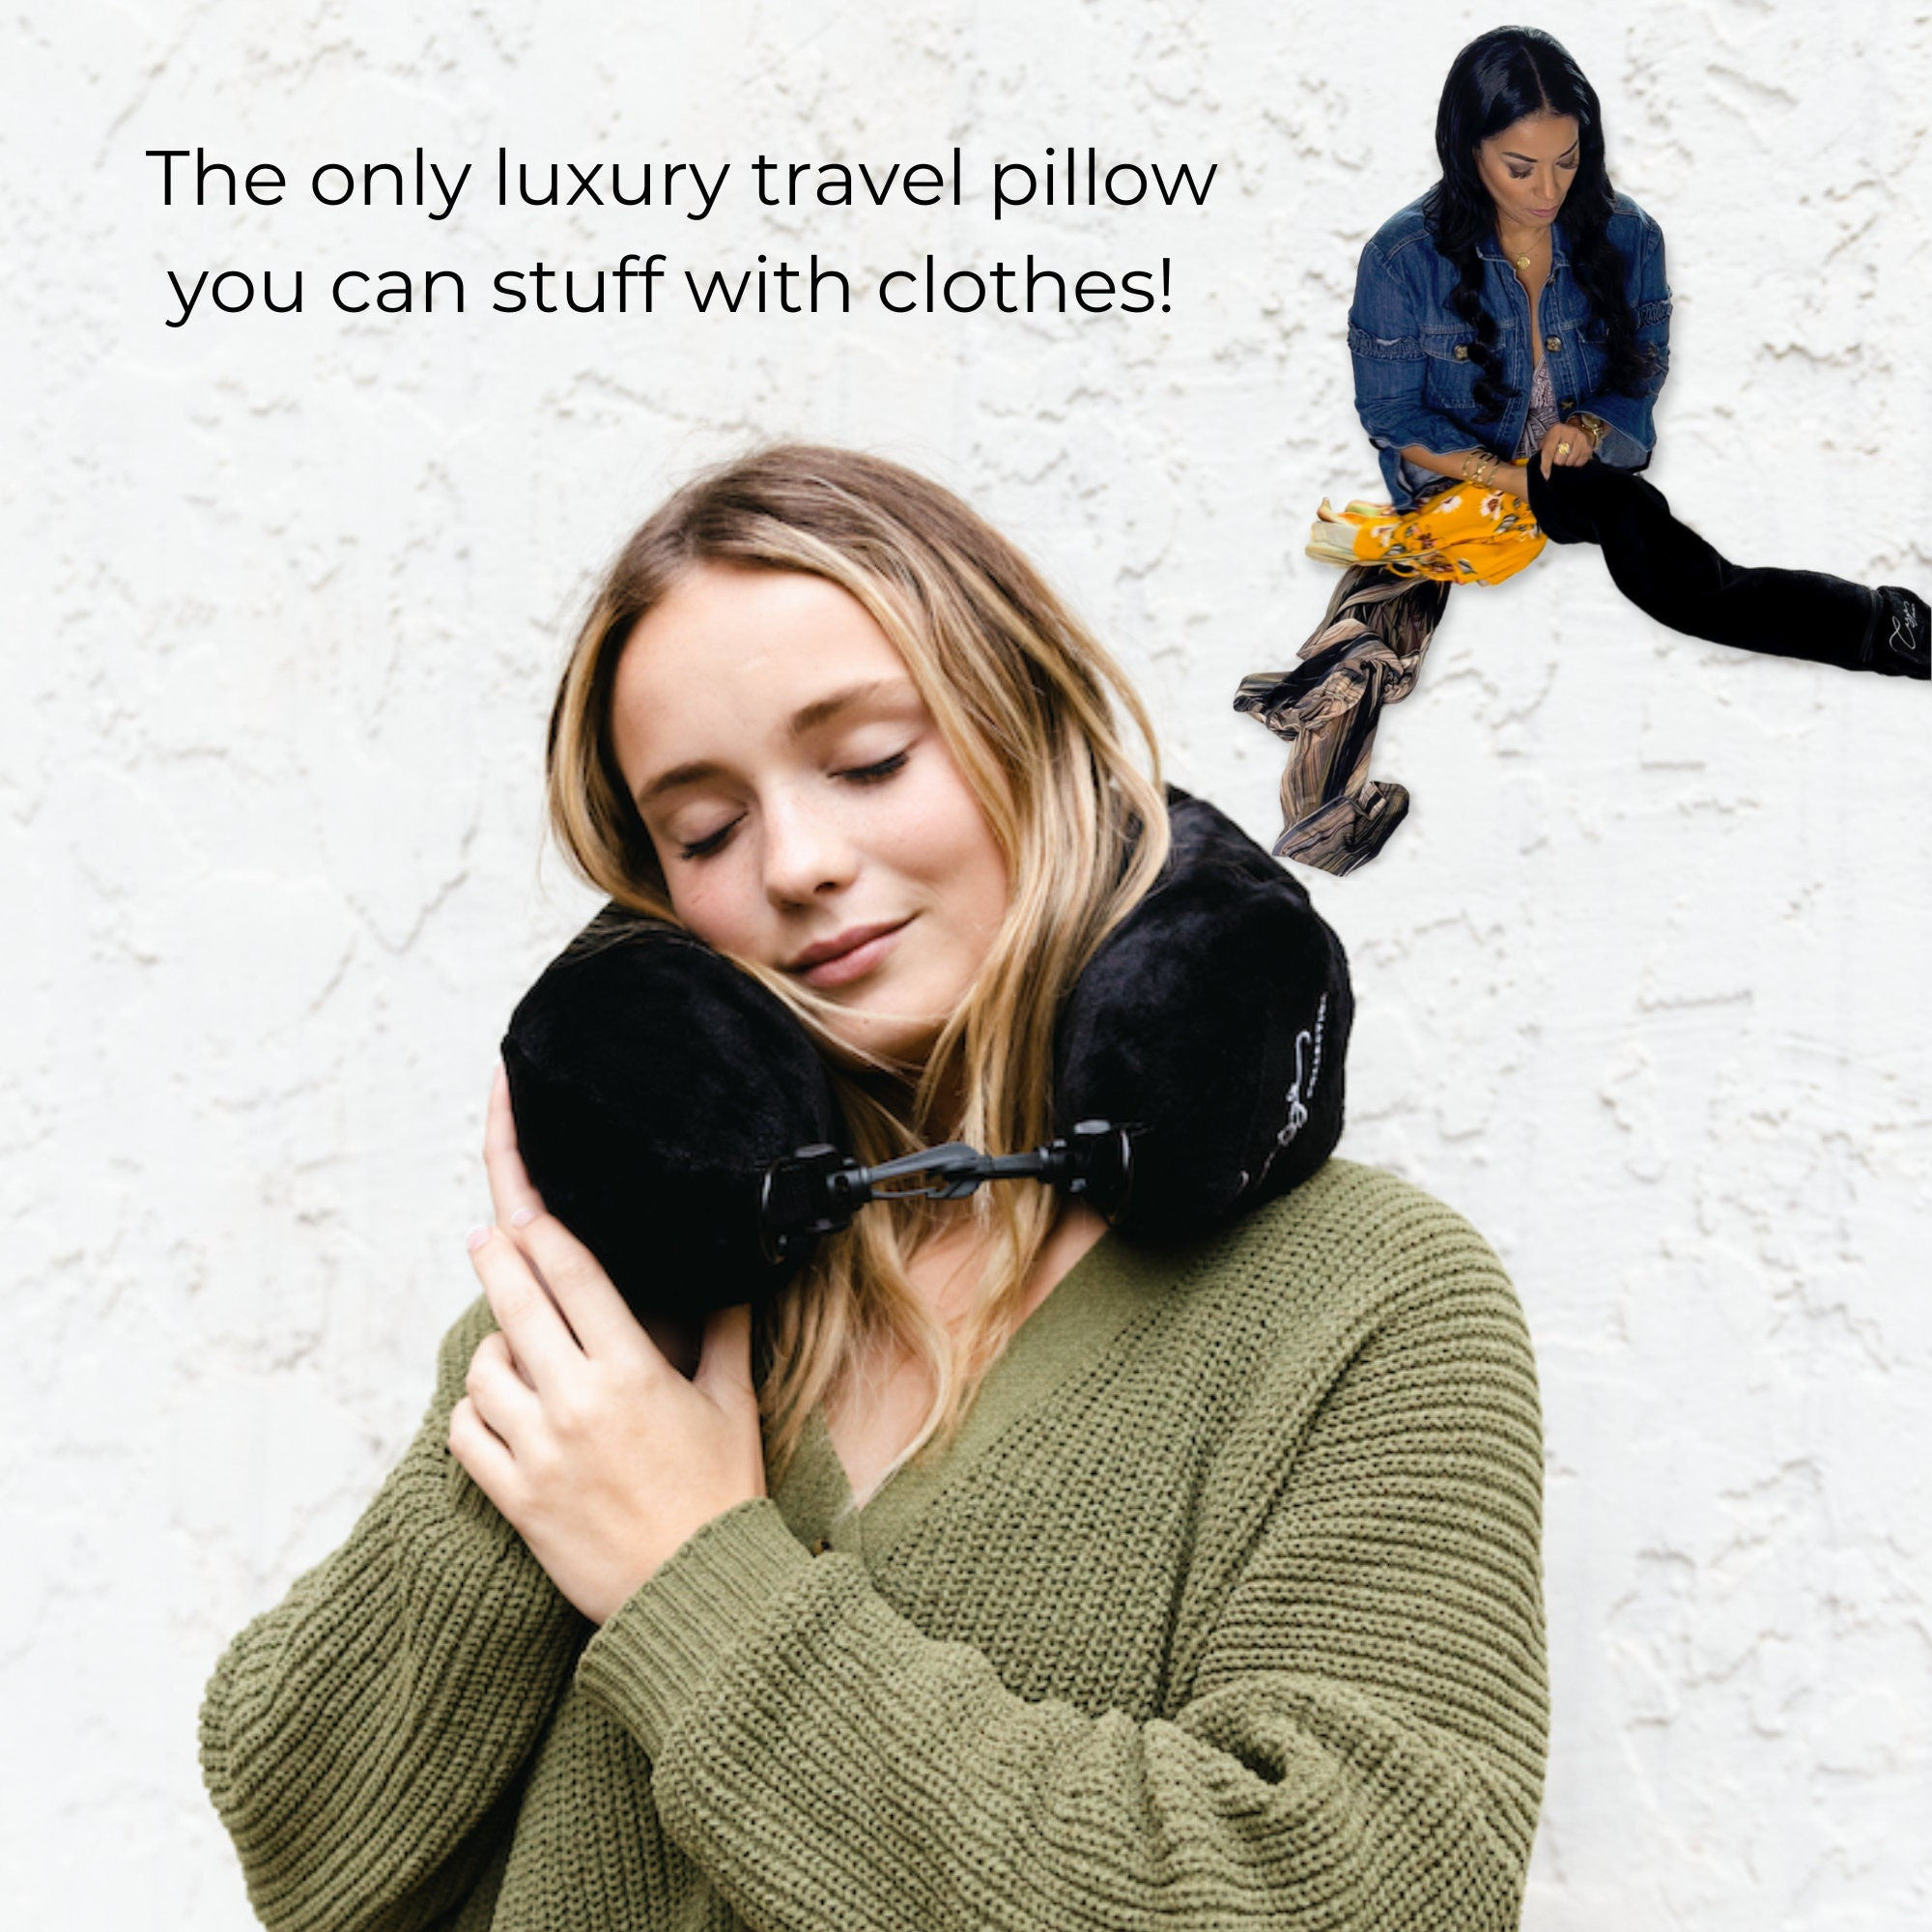 Almohada de viaje para el cuello que puedes rellenar con ropa Material de  felpa de lujo Correa para transportar Solo la almohada donde empacas la ropa  Envío rápido -  España